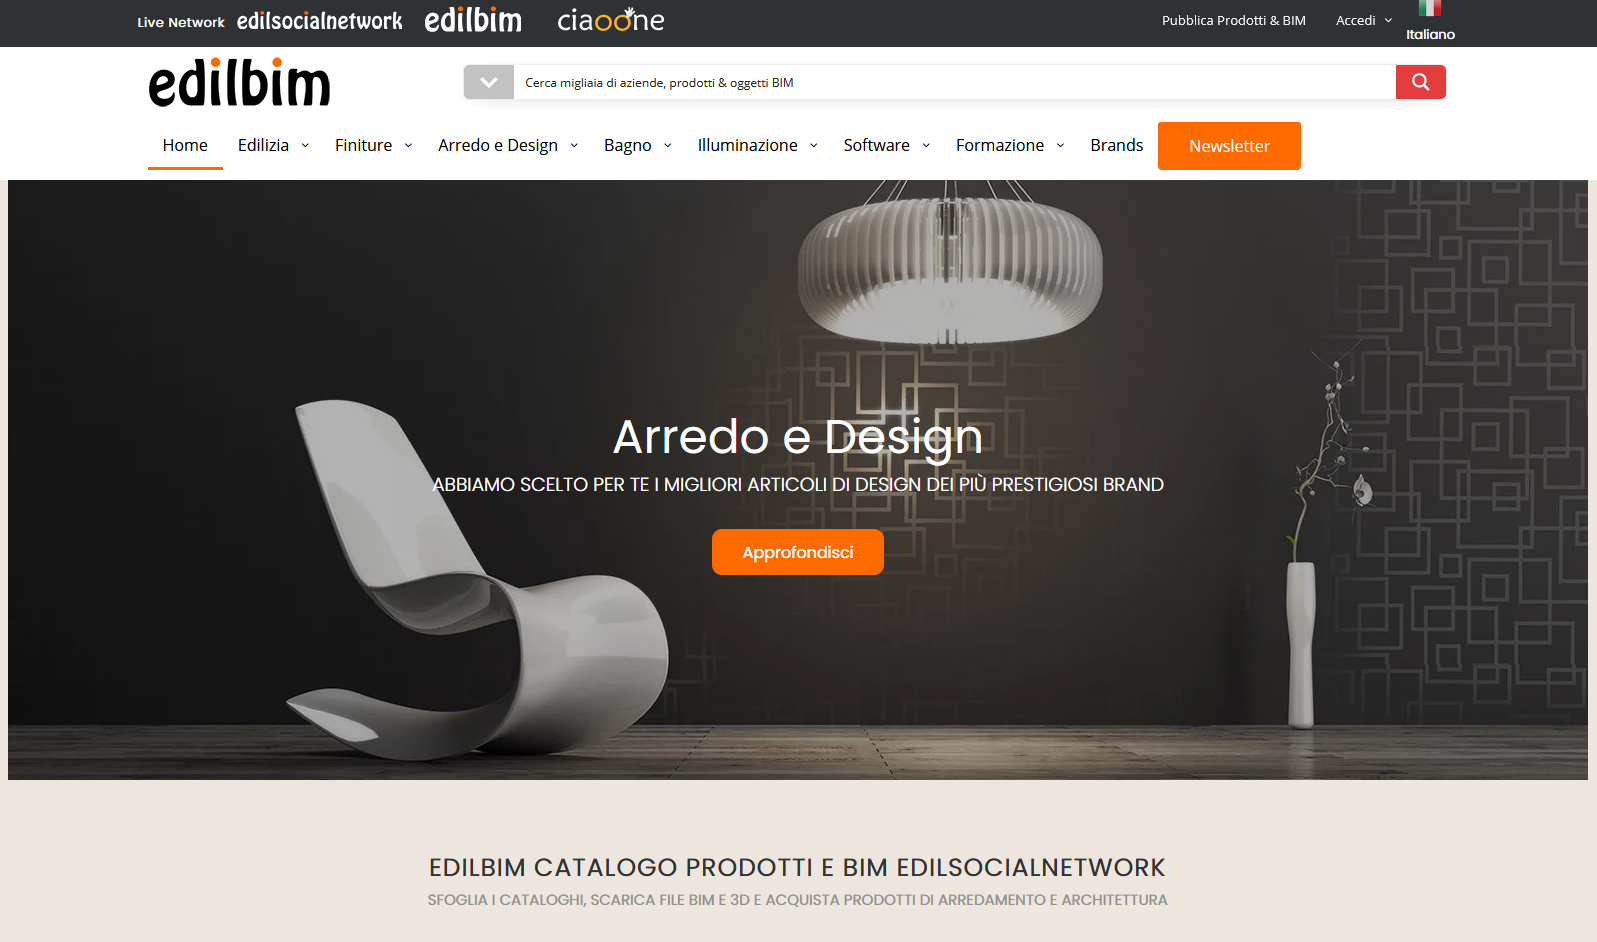 EdilBIM home page